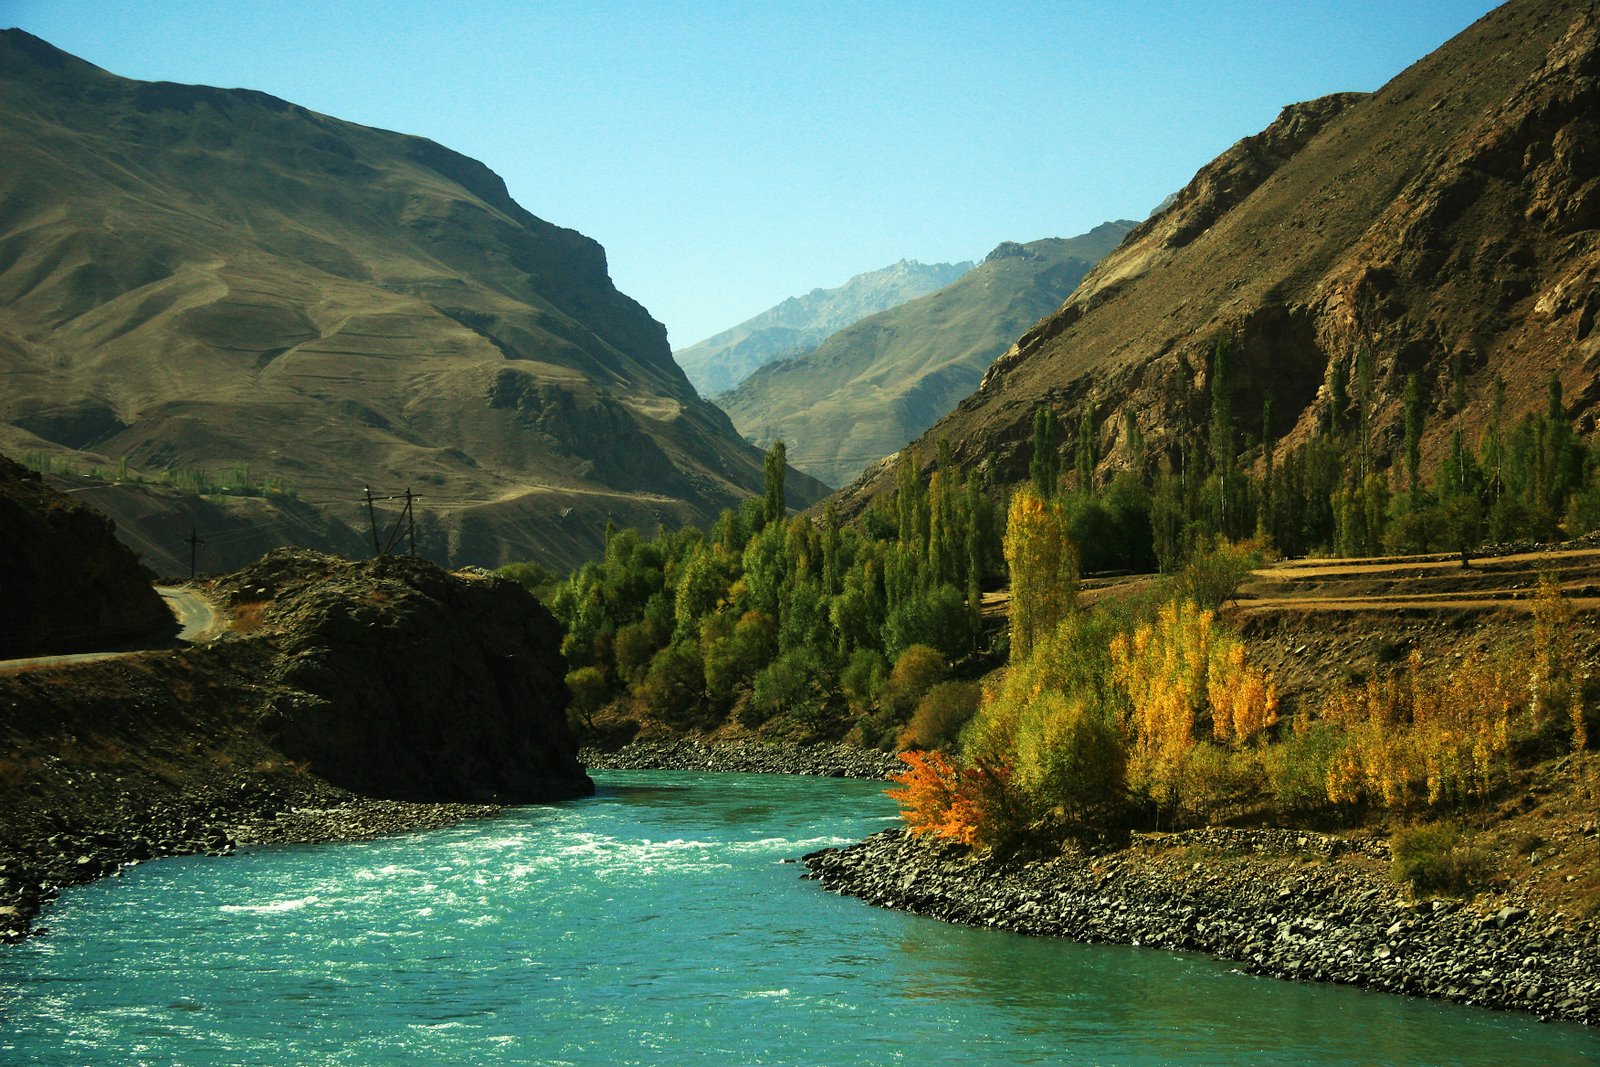 The country many rivers. Природа Таджикистана Памир. Таджикистан тоглари. Горный природа Таджикистана. Природа Горний Таджикистан.